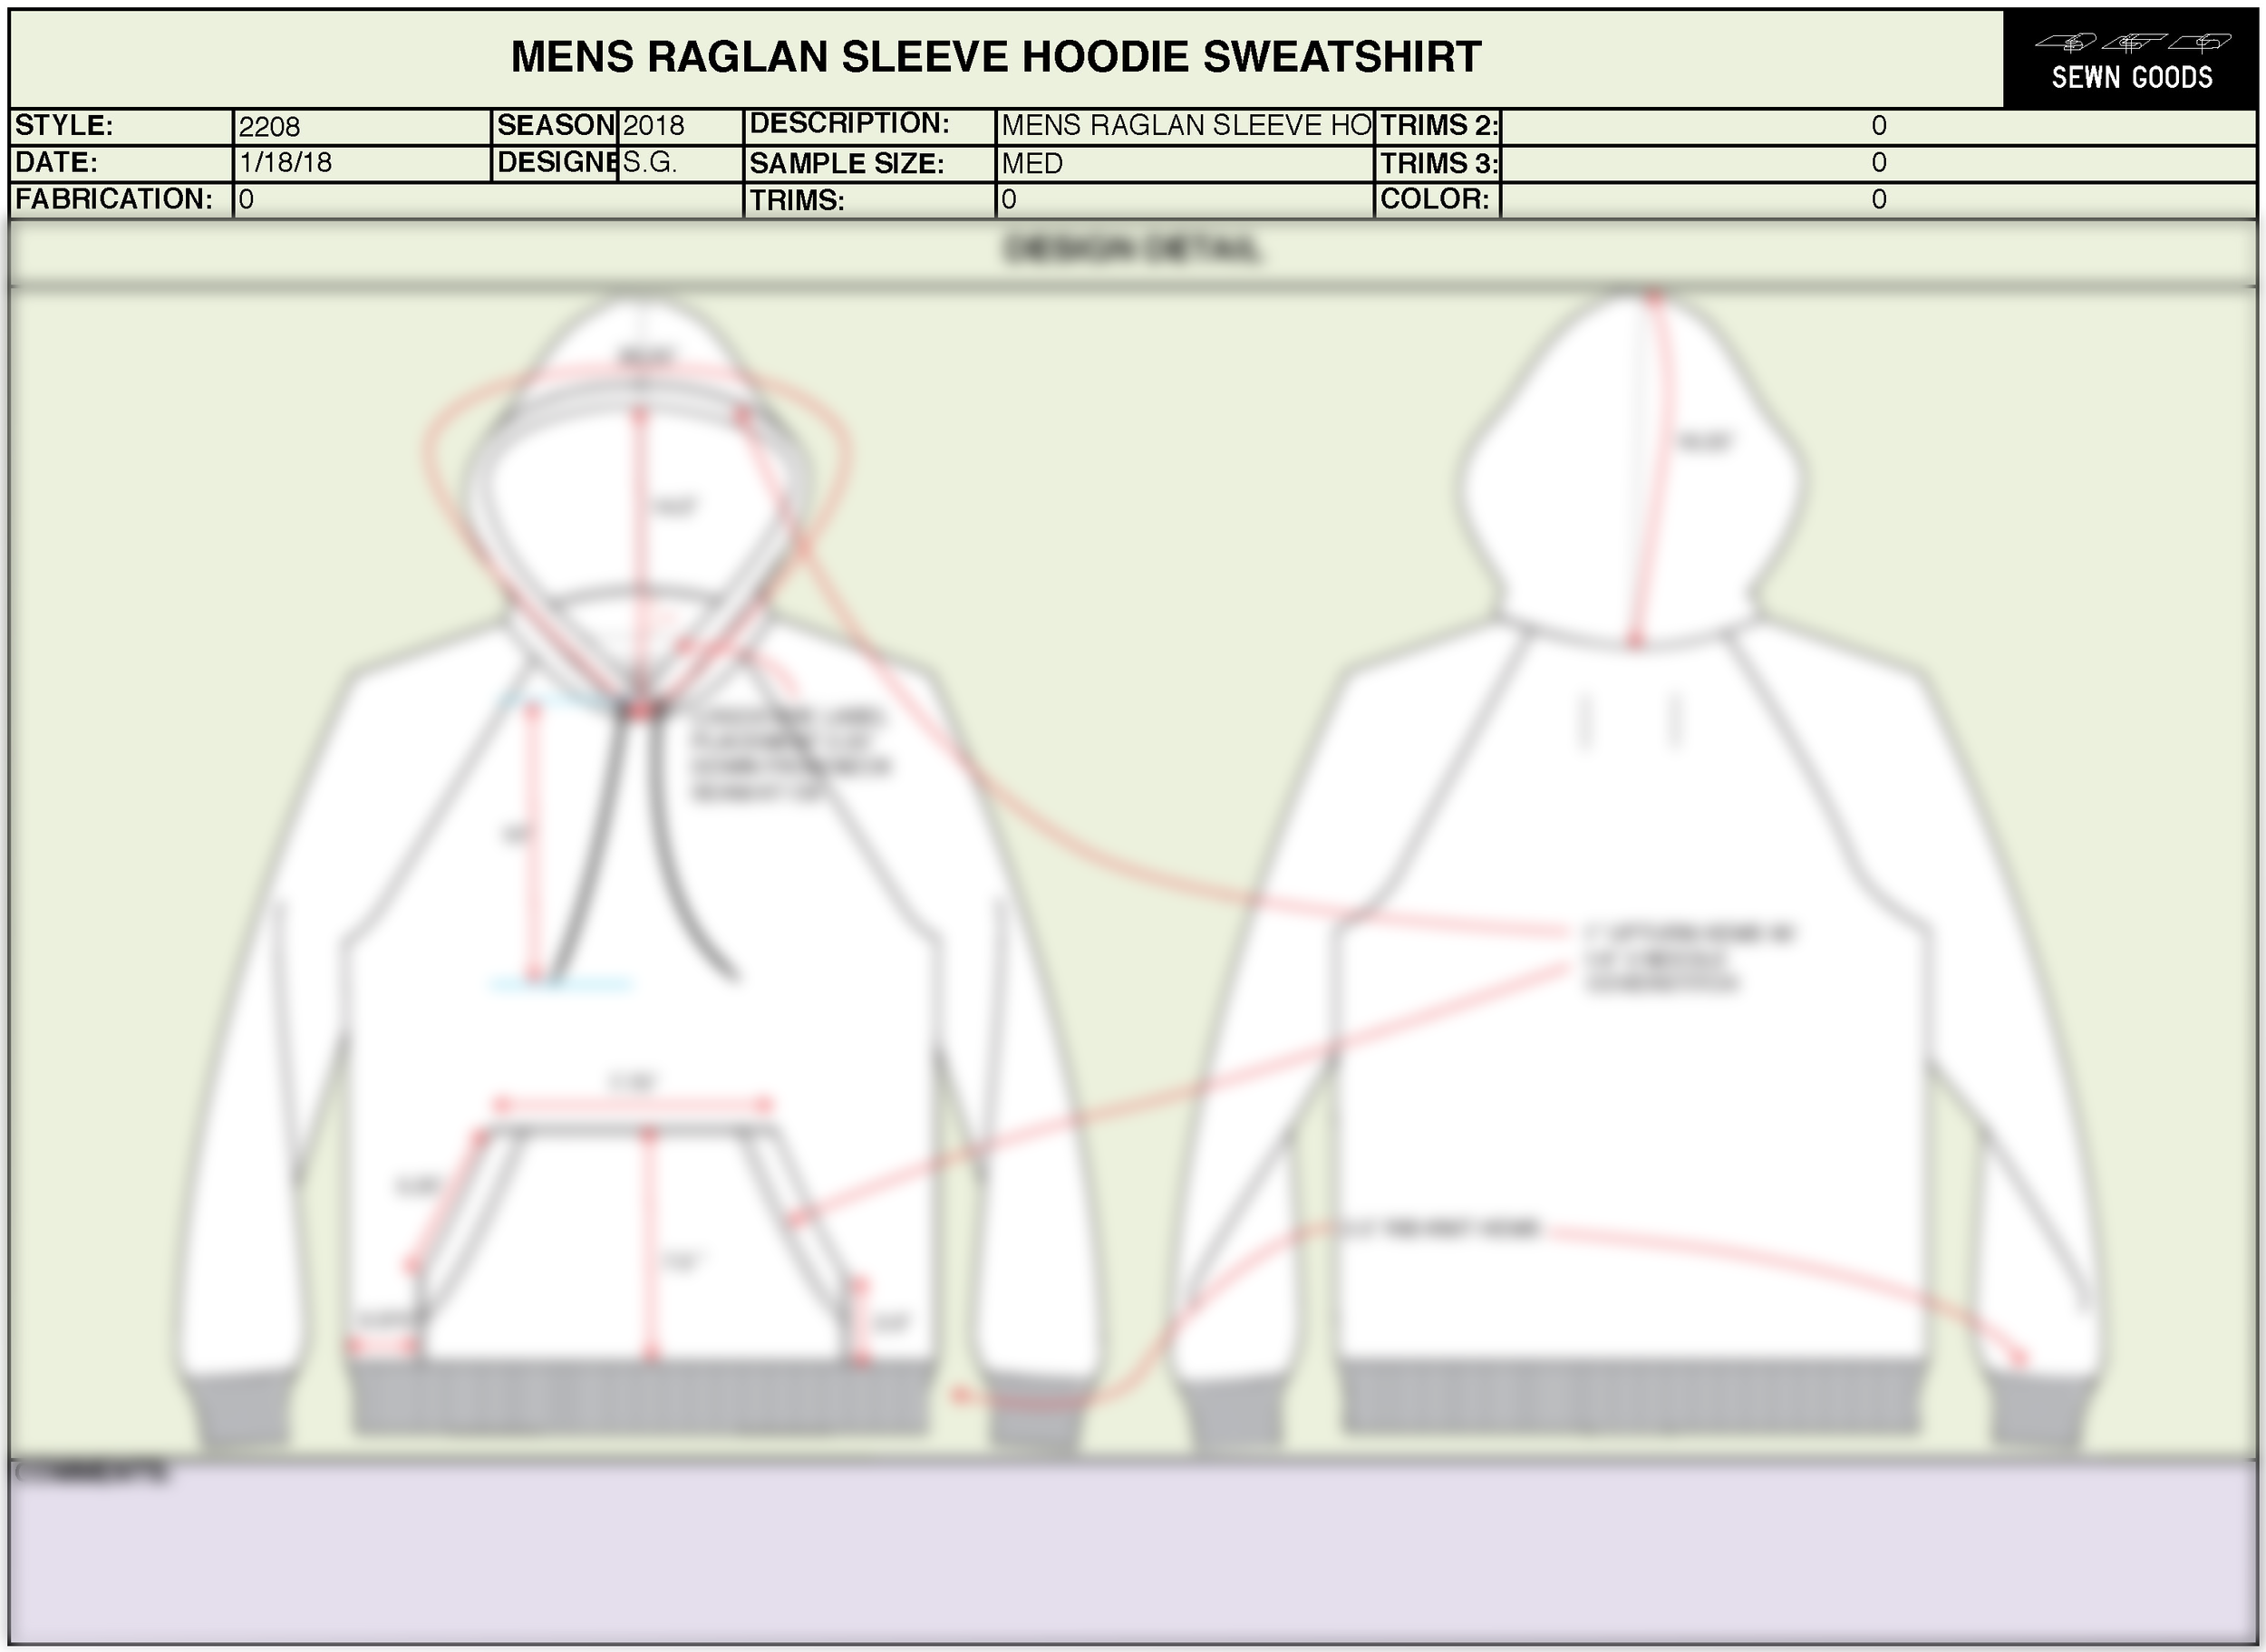 sewn-goods-tech-pack-template-raglan-sleeve-hoodie-sweatshirt-mens